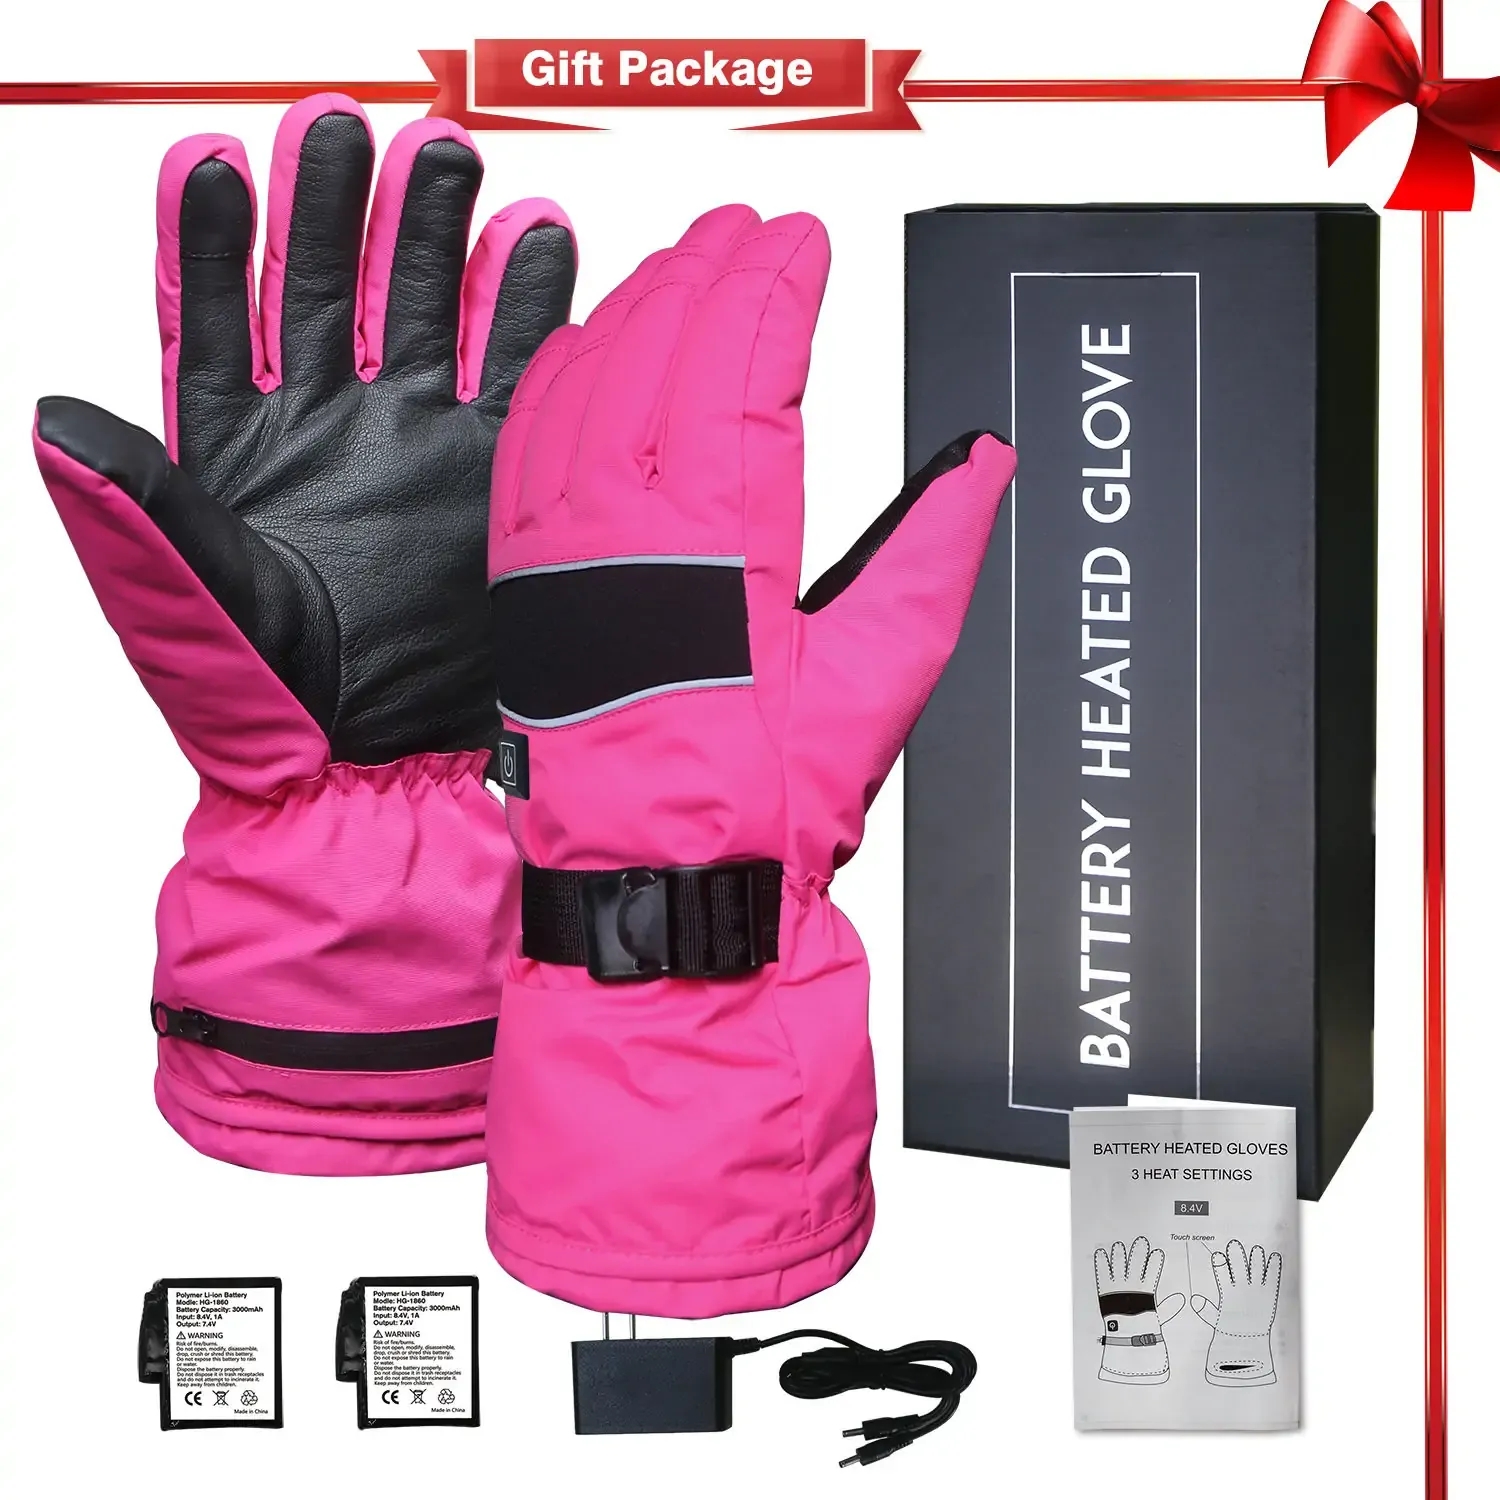 Waterproof Electric Heated Gloves.webp (1).jpg